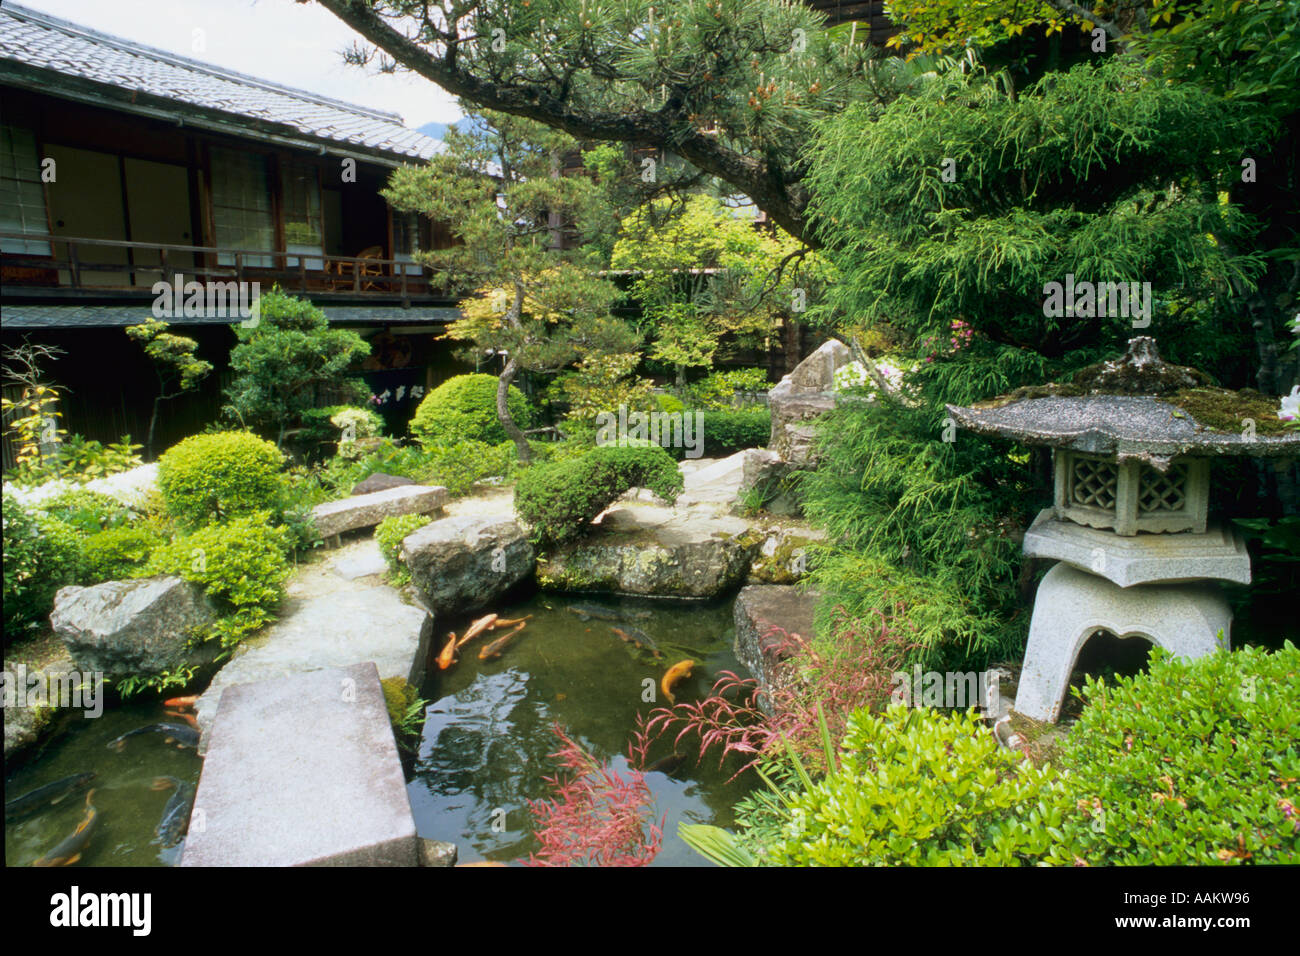 Japan Kiso Valley Tsumago garden Stock Photo